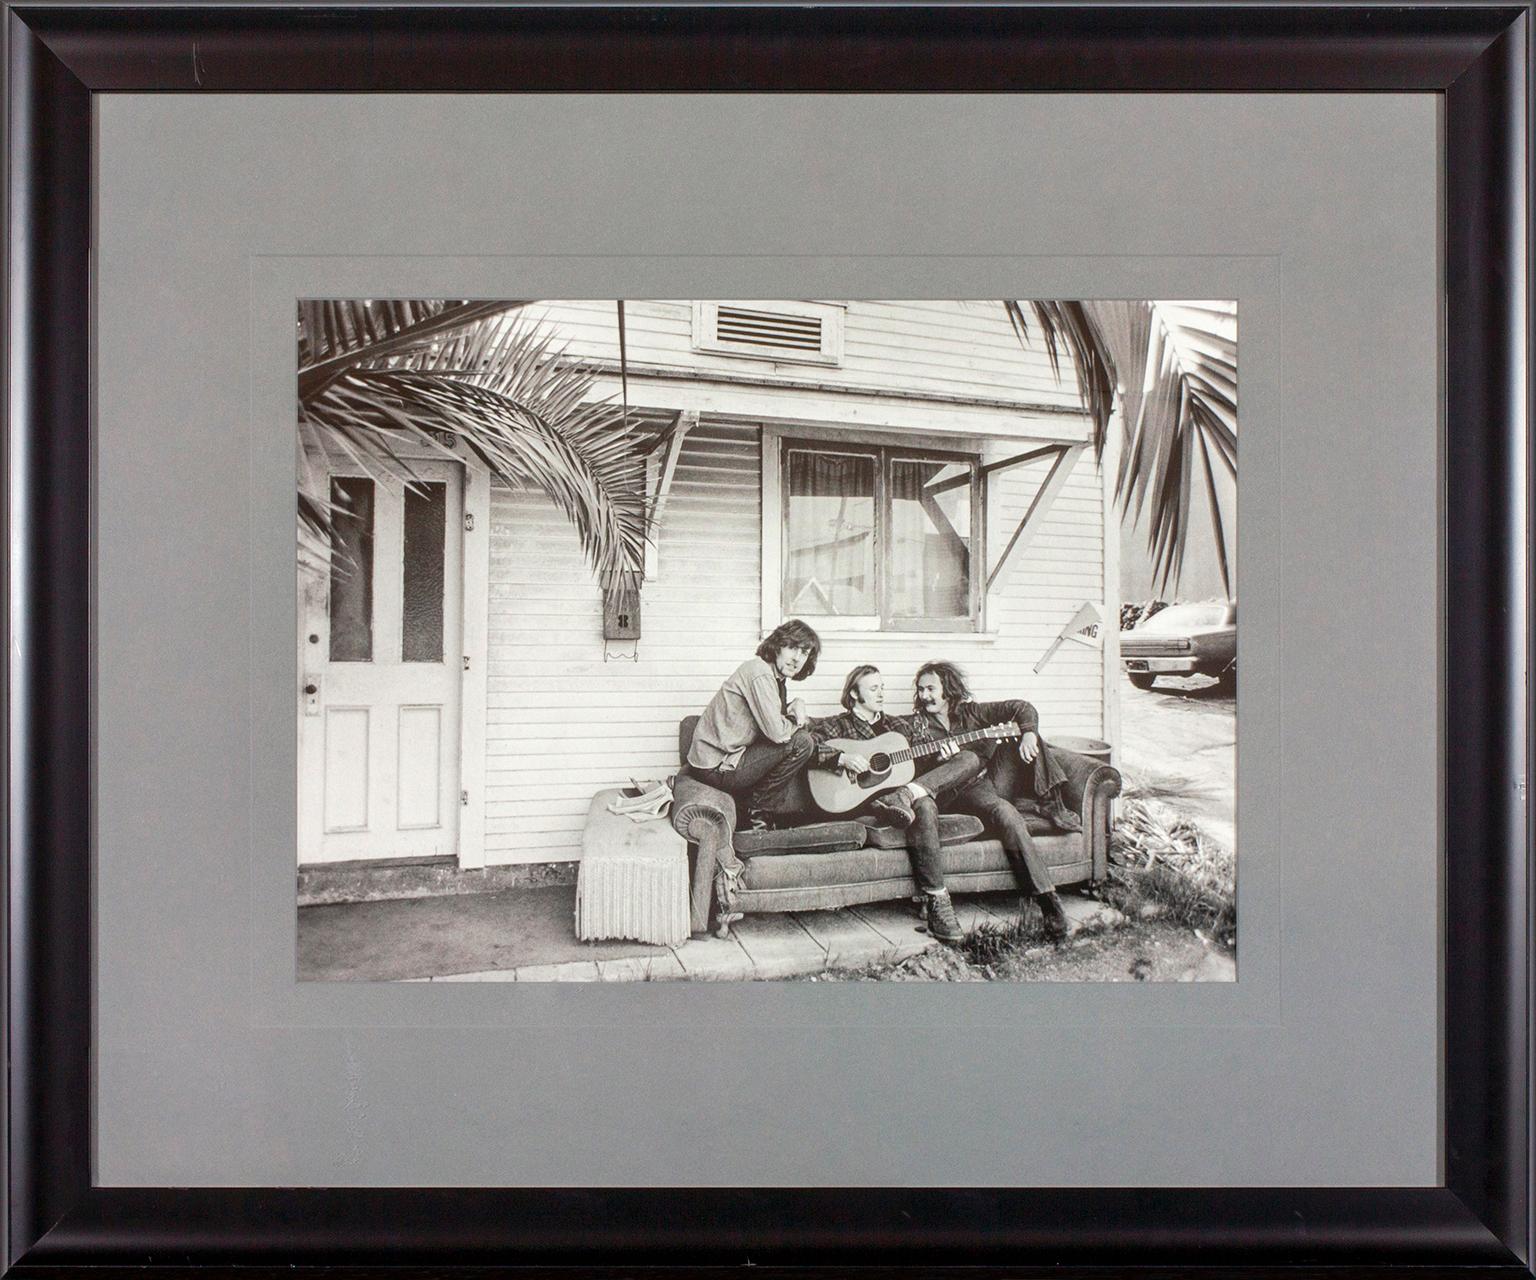 Outtake-Foto aus der Fotosession für das Albumcover von Crosby, Stills & Nash 1969 in West Hollywood, Kalifornien, vom Fotografen Henry Diltz. Zeigt David Crosby, Stephen Stills und Graham Nash auf einer Couch vor einem Haus sitzend. Dieses gerahmte